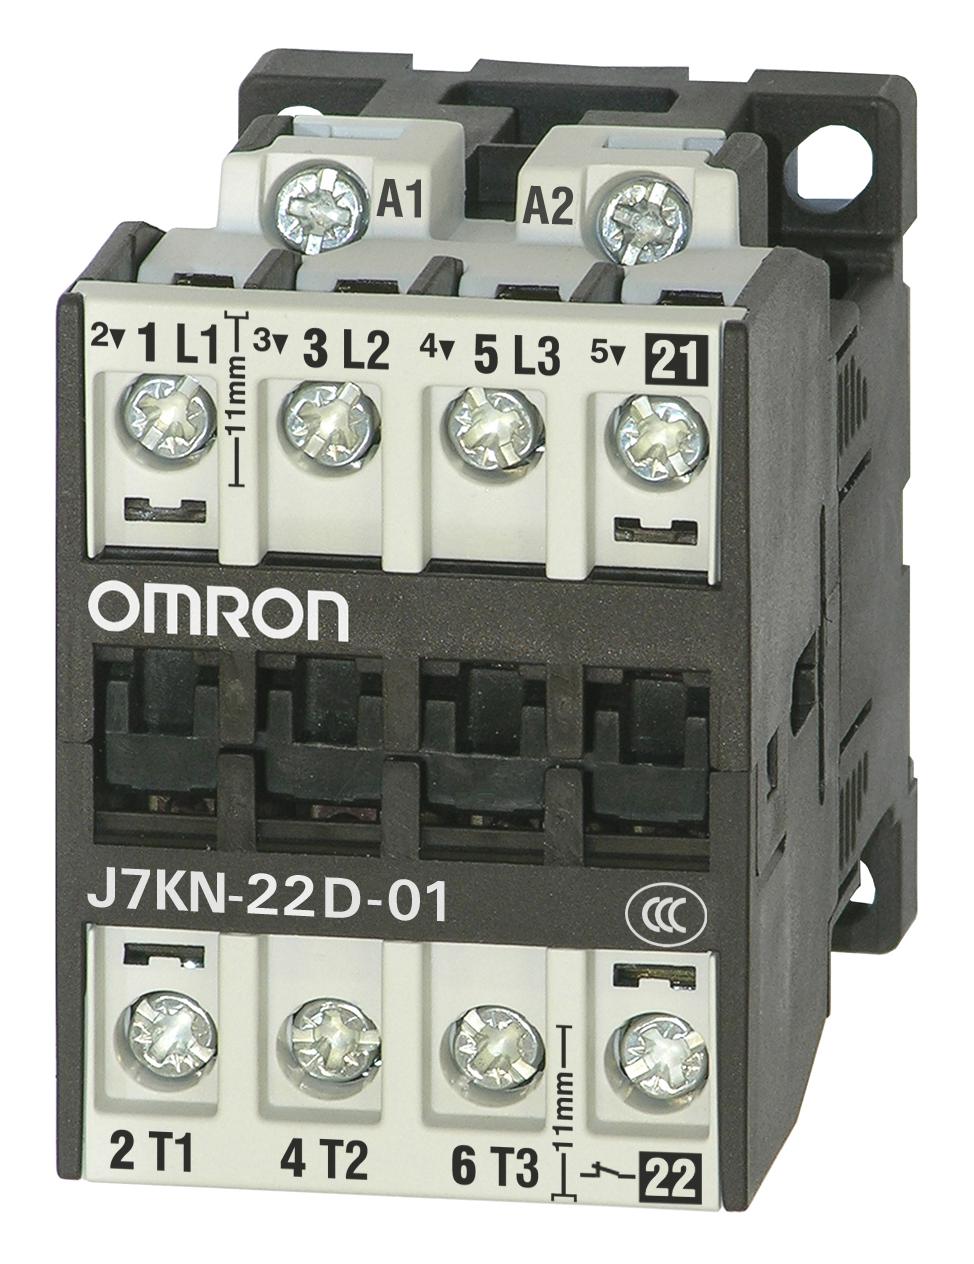 J7KN-22D-01 24 CONTACTORS RELAYS OMRON